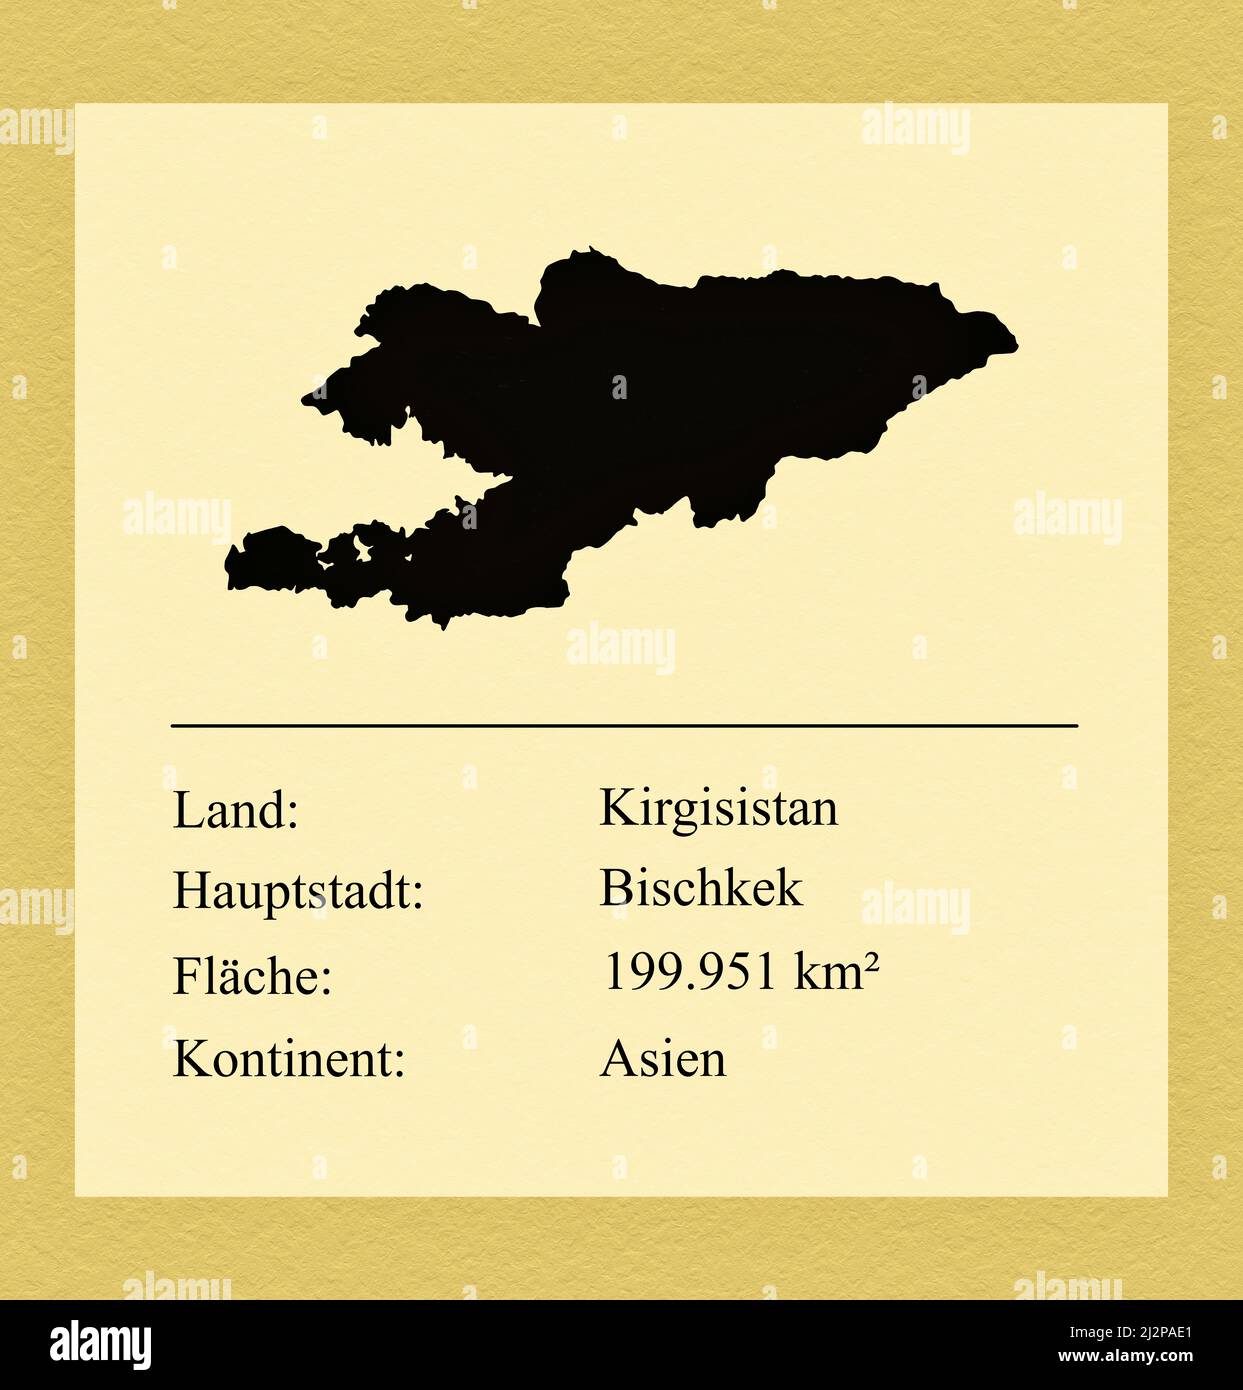 Umrisse des Landes Kirgisistan, darunter ein kleiner Steckbrief mit Ländernamen, Hauptstadt, Fläche und Kontinent Stock Photo